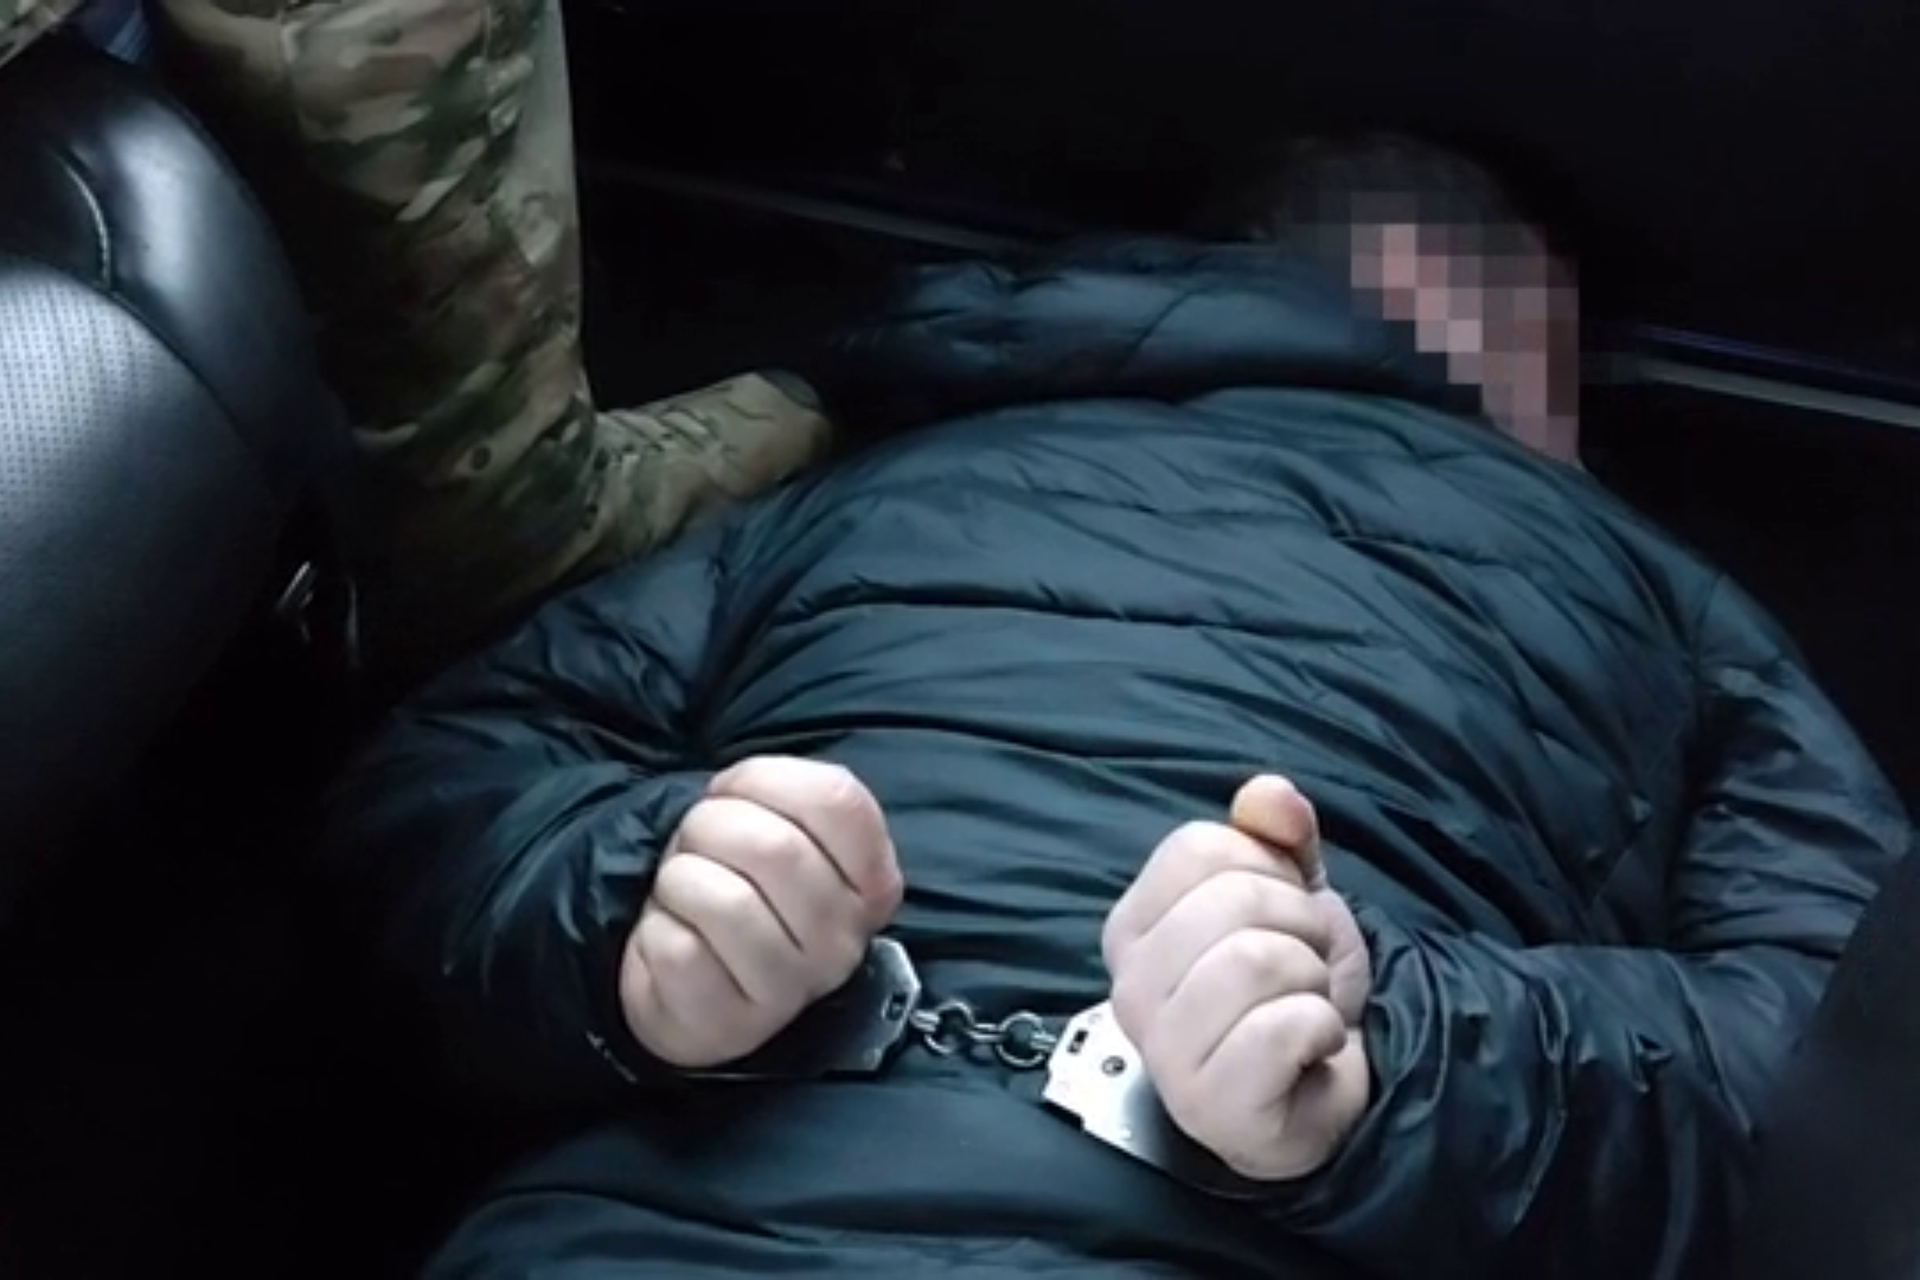 ФСБ арестовала россиянина Блинова по делу о госизмене